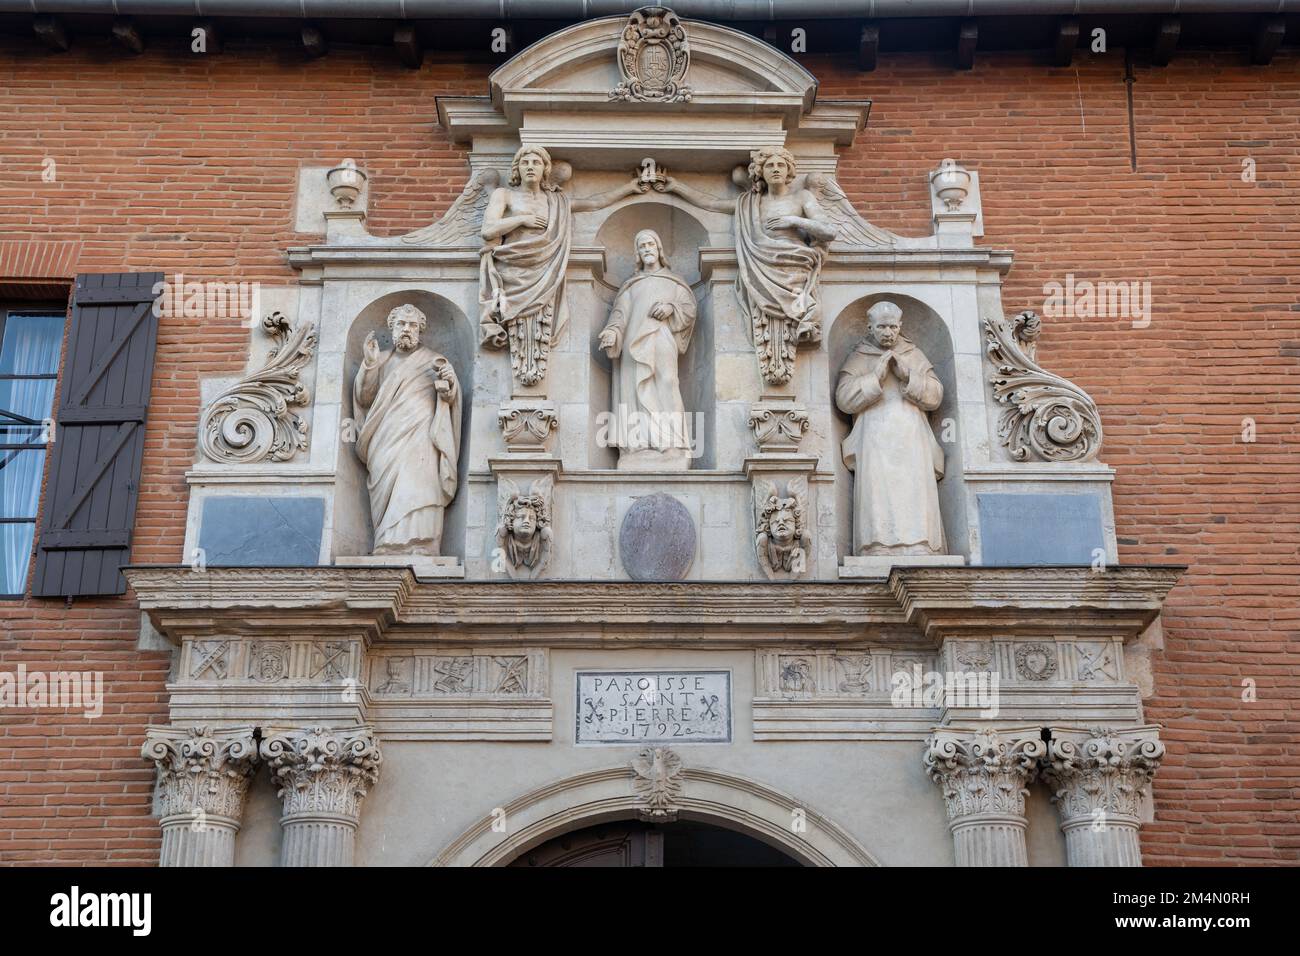 Alte Steinschnitzereien, die Jesus, den Petersdom, einen karthusischen Mönch und Engel über dem Eingangstor zur Kirche St. Pierre des Chartreux in Toulouse, Frankreich darstellen Stockfoto